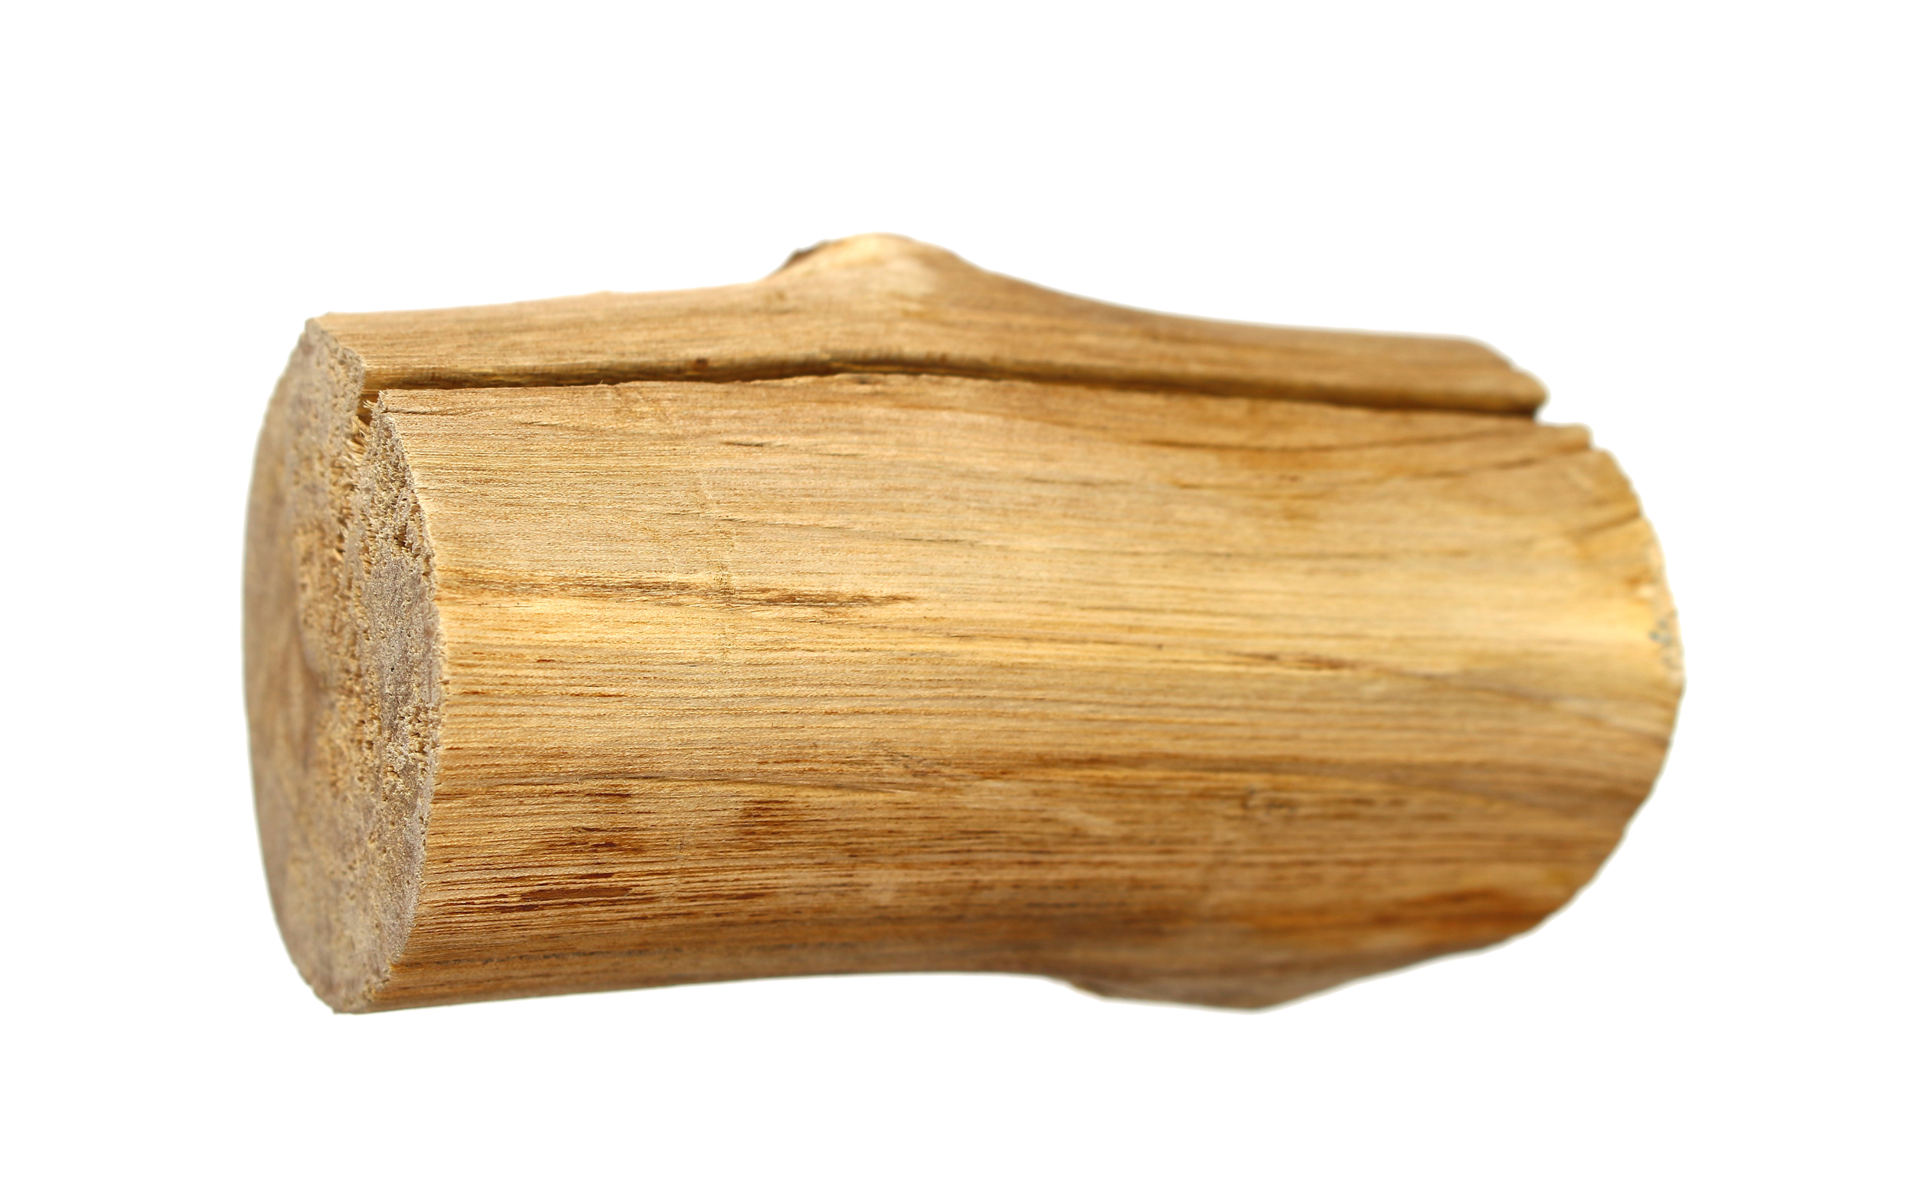 Tưởng tượng về nhiệt độ khô hạn và cảm giác sần sật của gỗ thanh khi được cắt. Bộ sưu tập hình ảnh cắt gỗ khô trong suốt của chúng tôi sẽ giúp bạn hiểu rõ hơn về đặc tính của gỗ và tạo ra một hiệu ứng đang cực kỳ thú vị để chiêm ngưỡng.